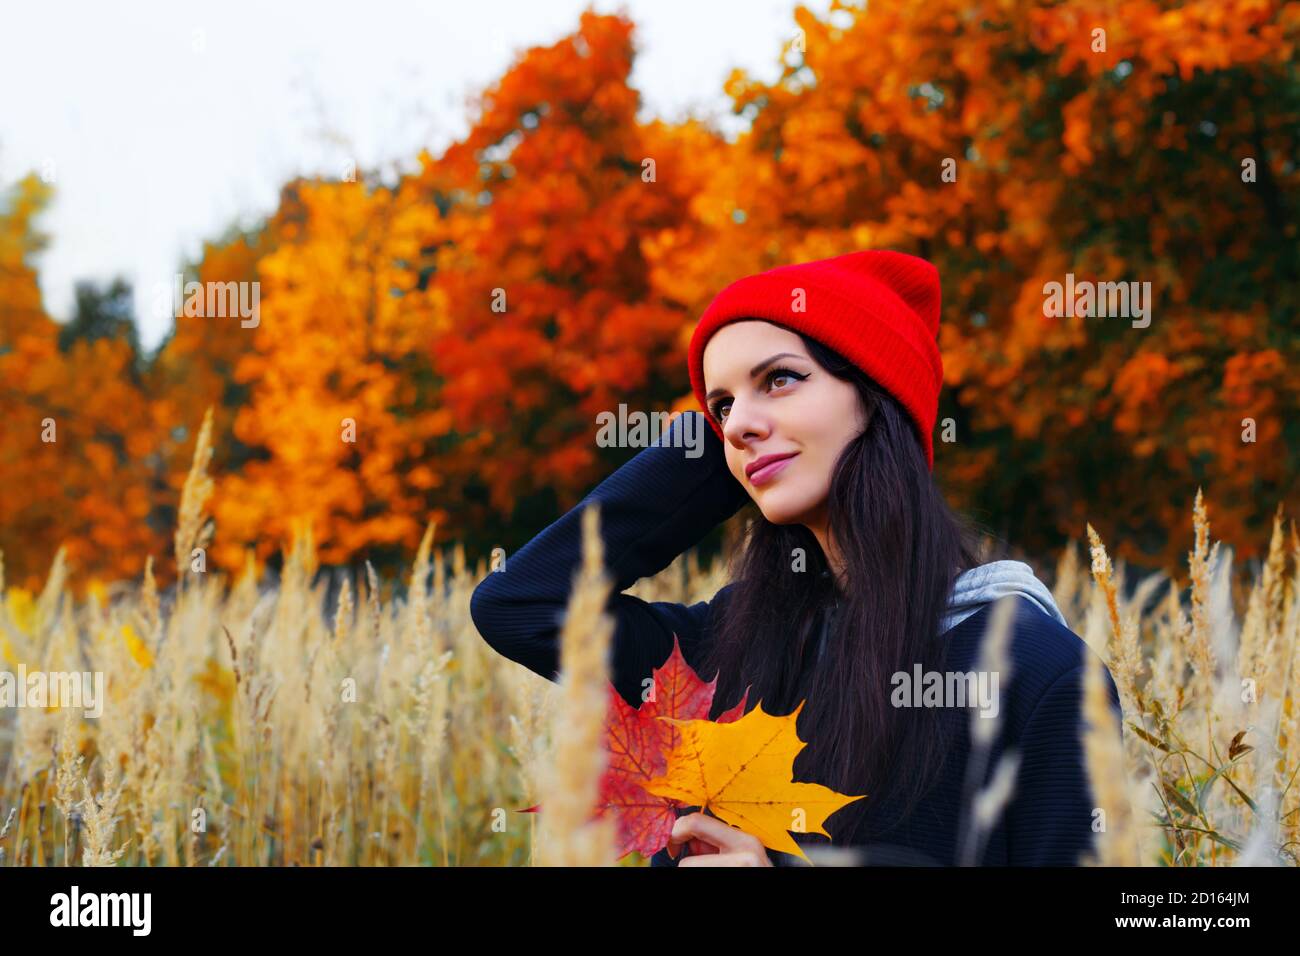 Brunnette femme caucasienne en chapeau rouge tenant des feuilles d'érable et souriant. Portrait d'automne en extérieur Banque D'Images